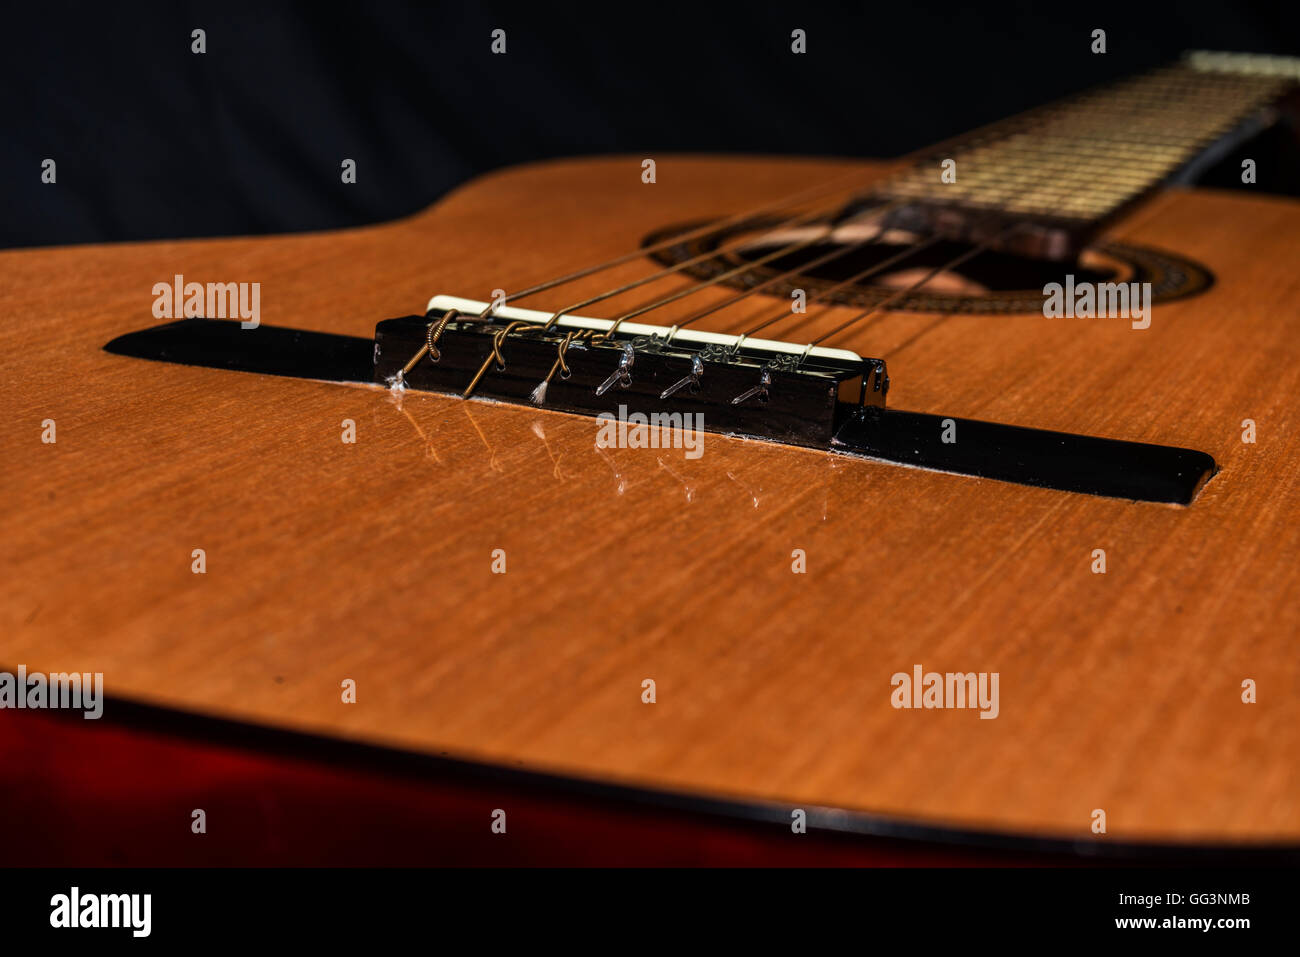 Approccio ad un detali della chitarra spagnola su sfondo nero Foto Stock